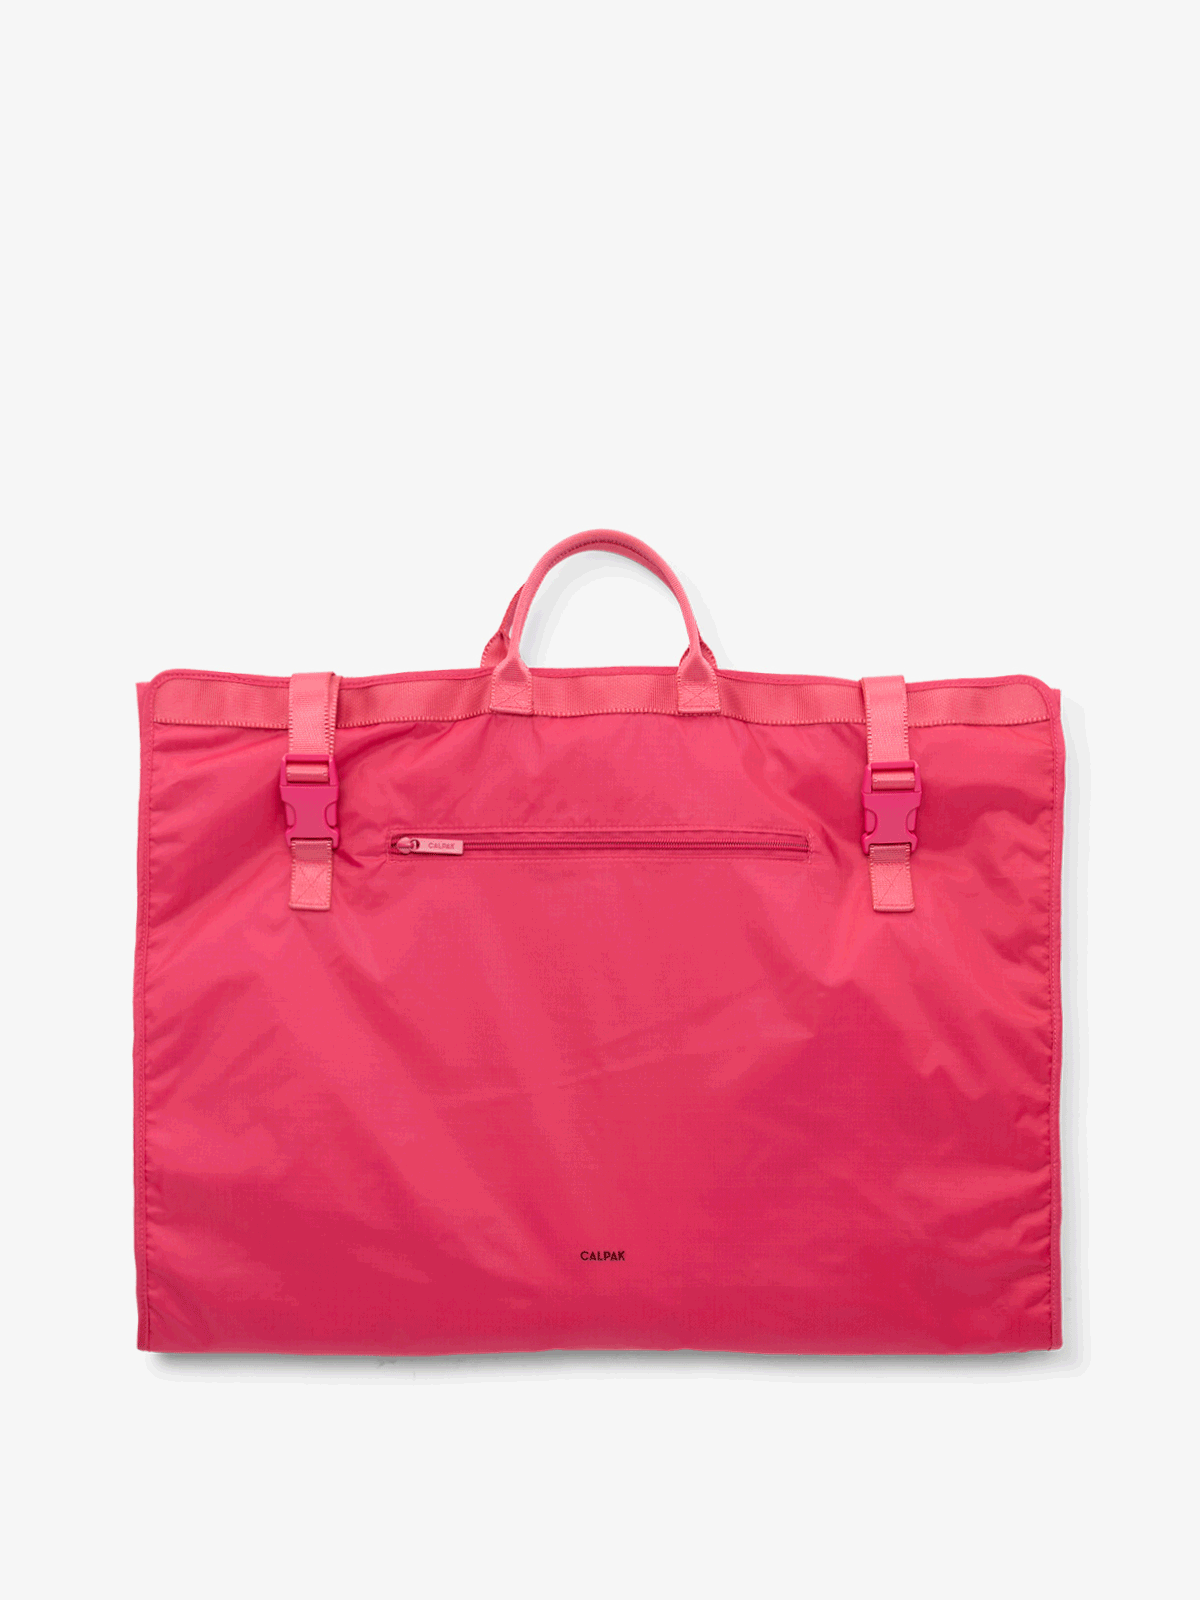 CALPAK Compakt large foldable garment bag in dragonfruit; KGL2001-DRAGONFRUIT